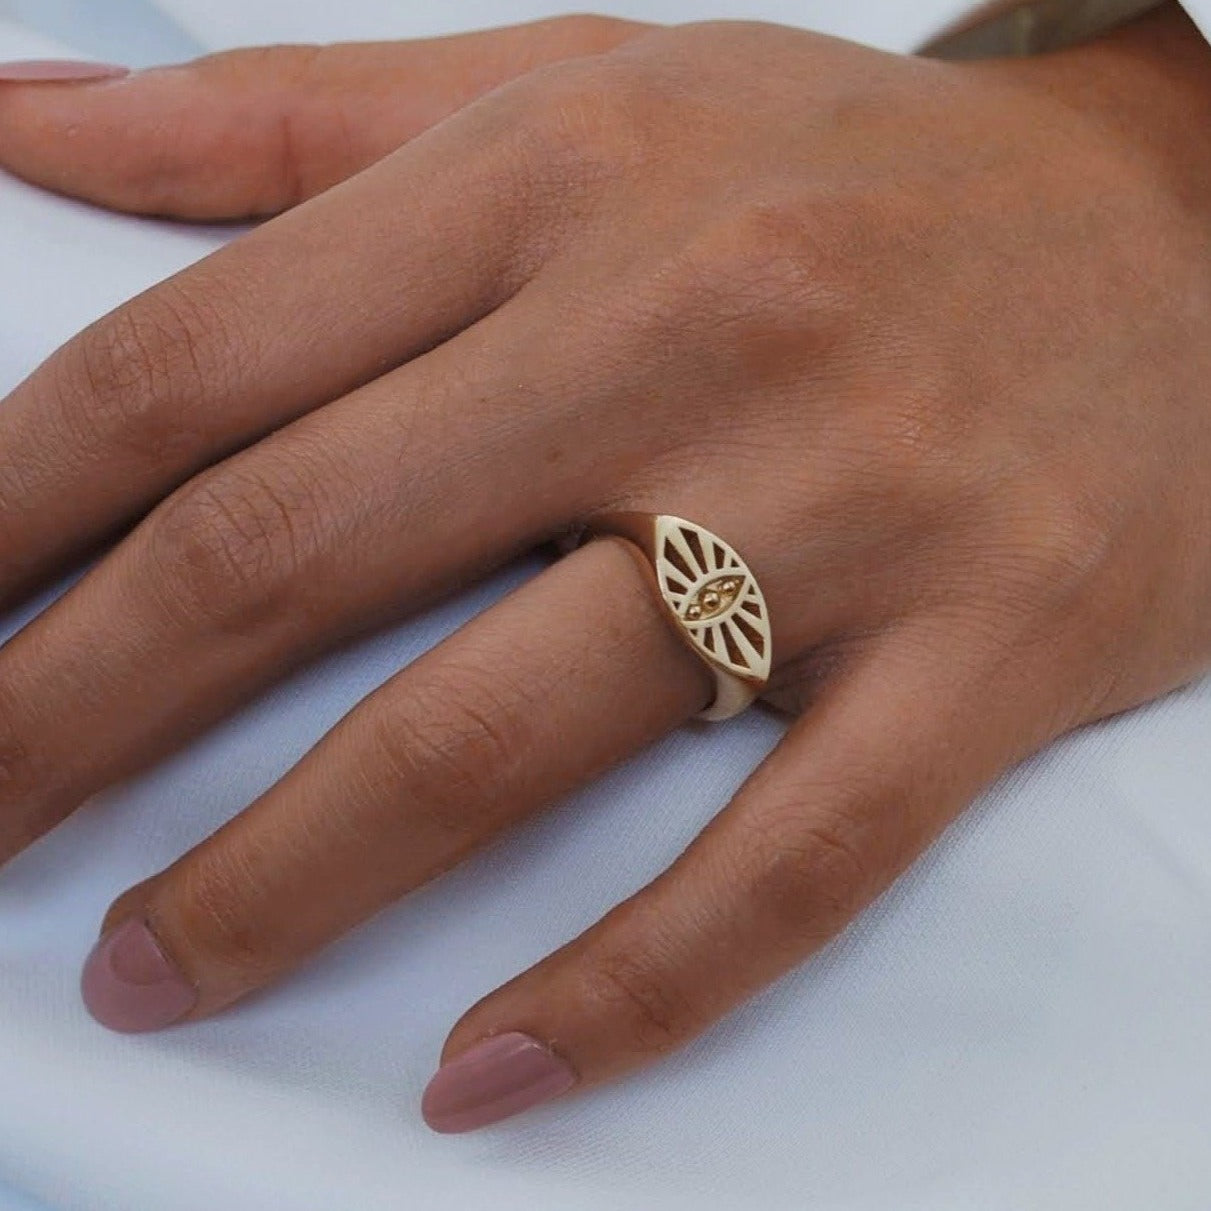 Maya Ring